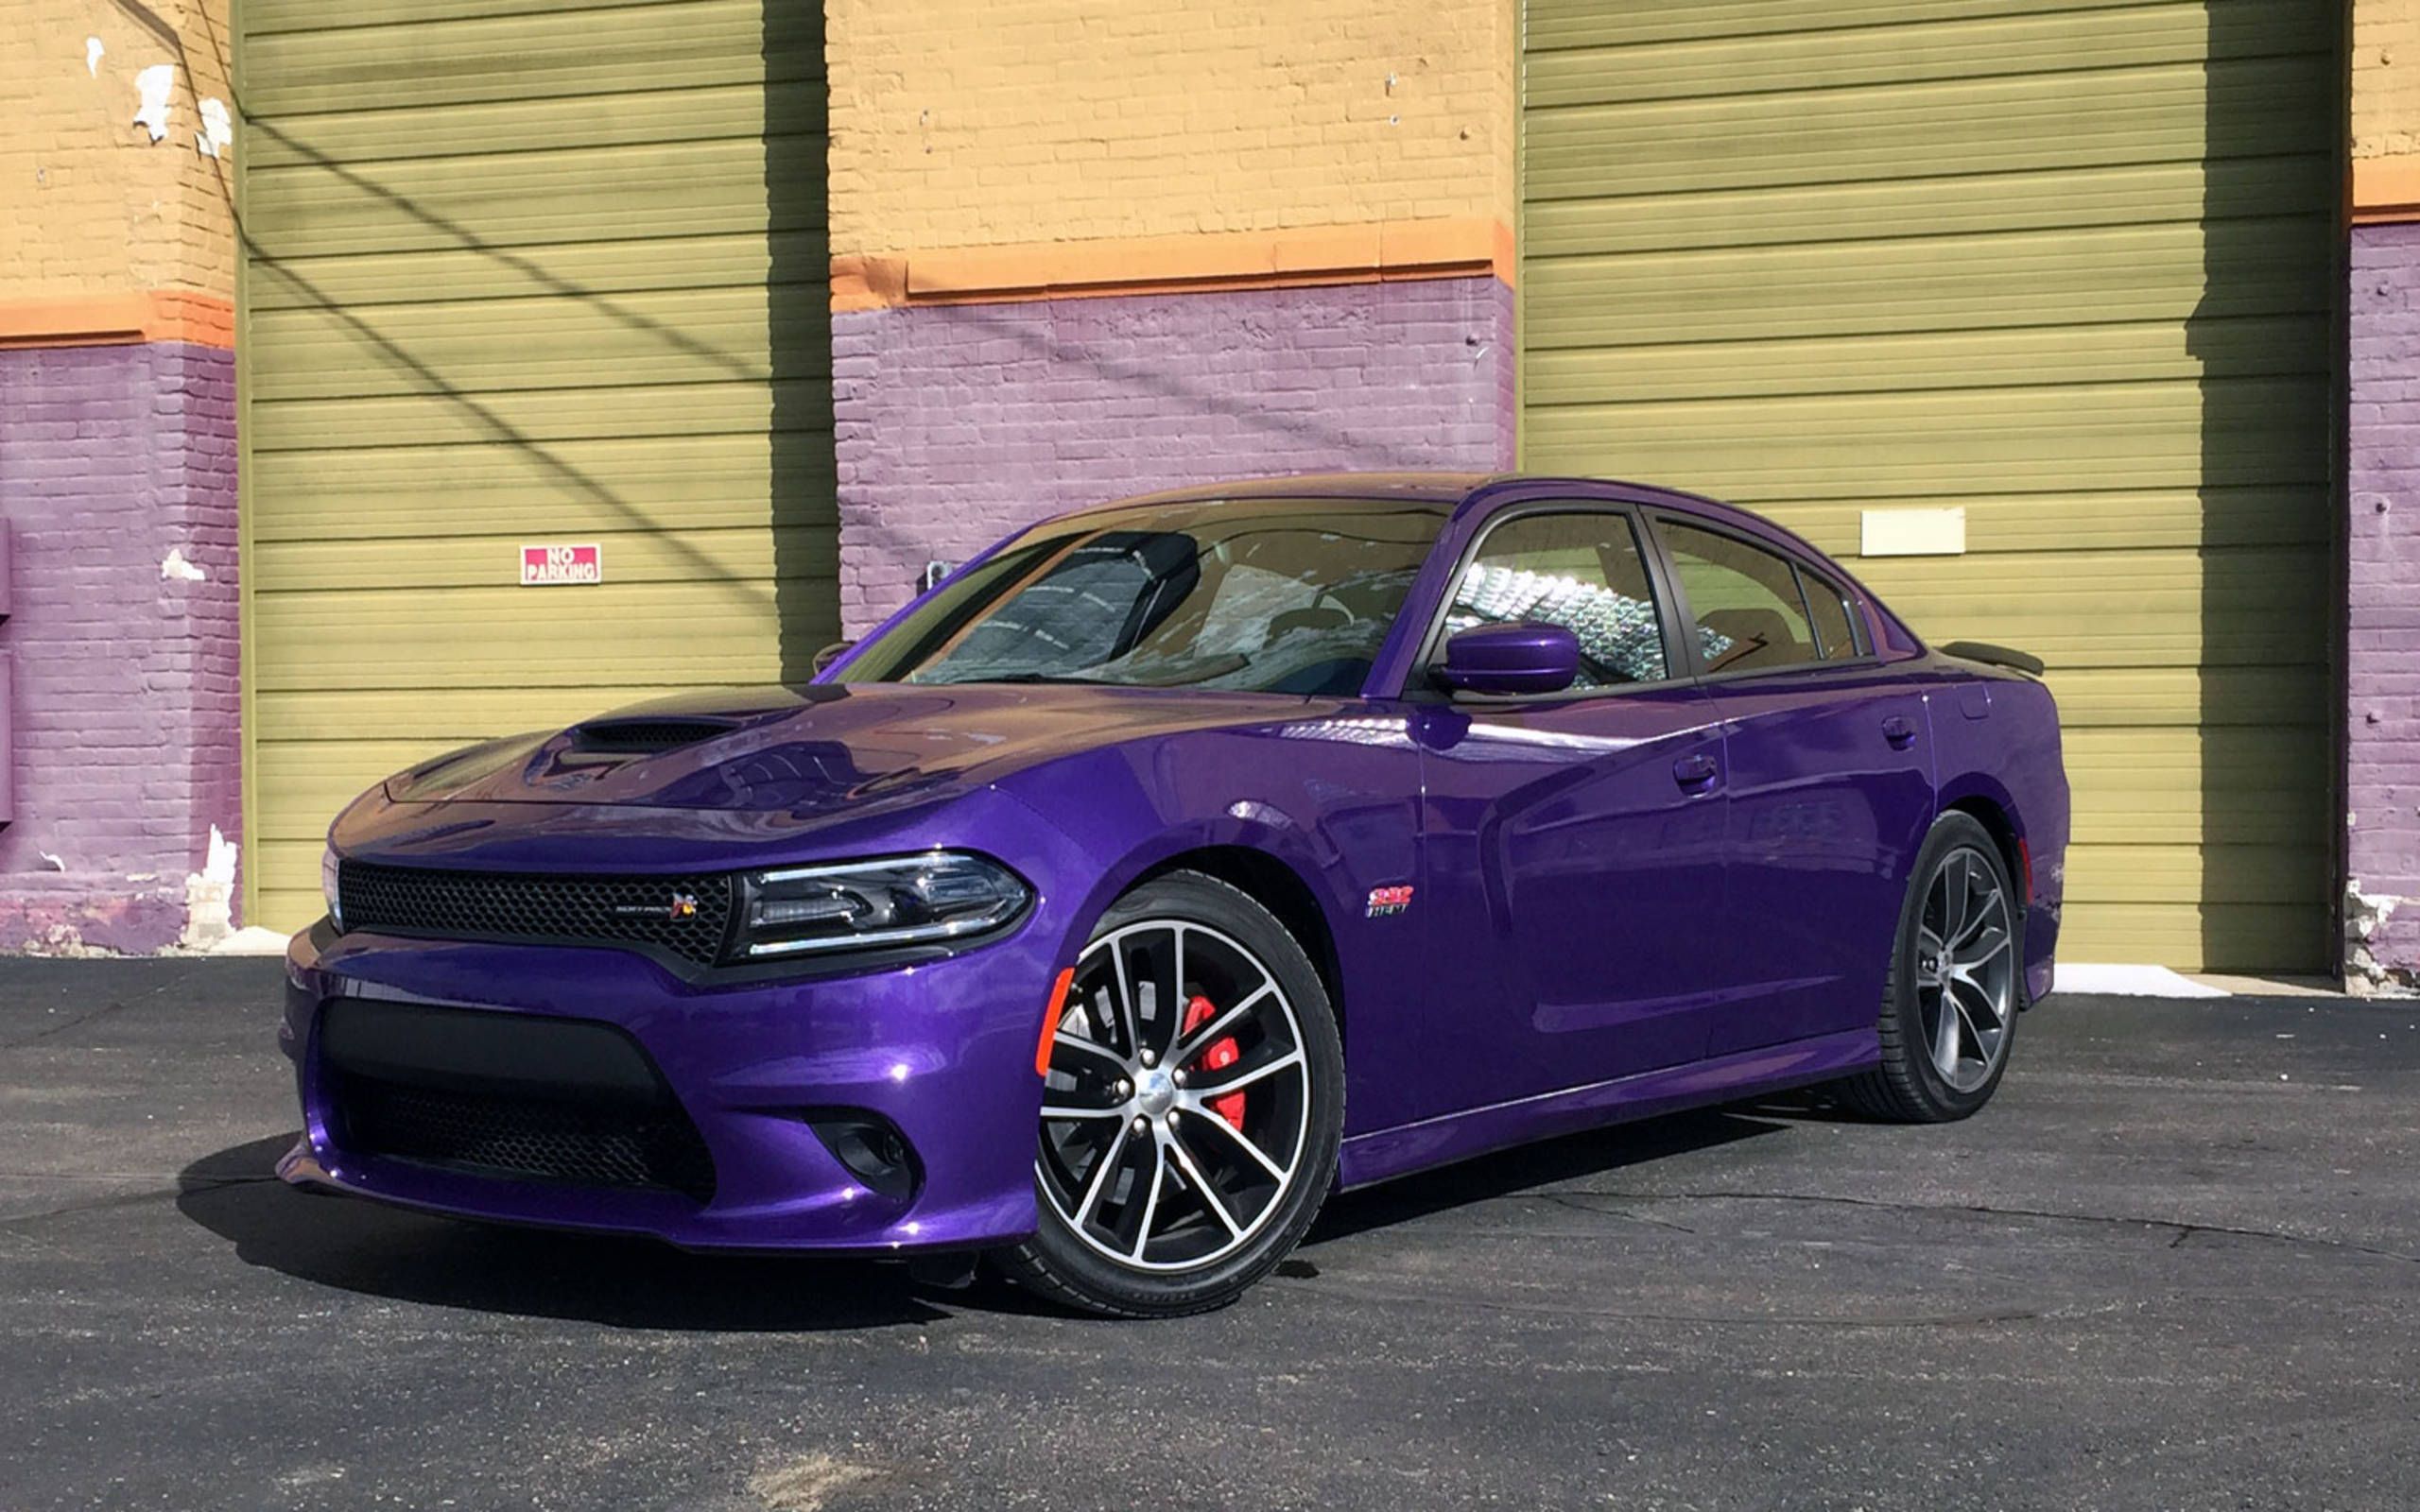 Purple Dodge Charger | vlr.eng.br